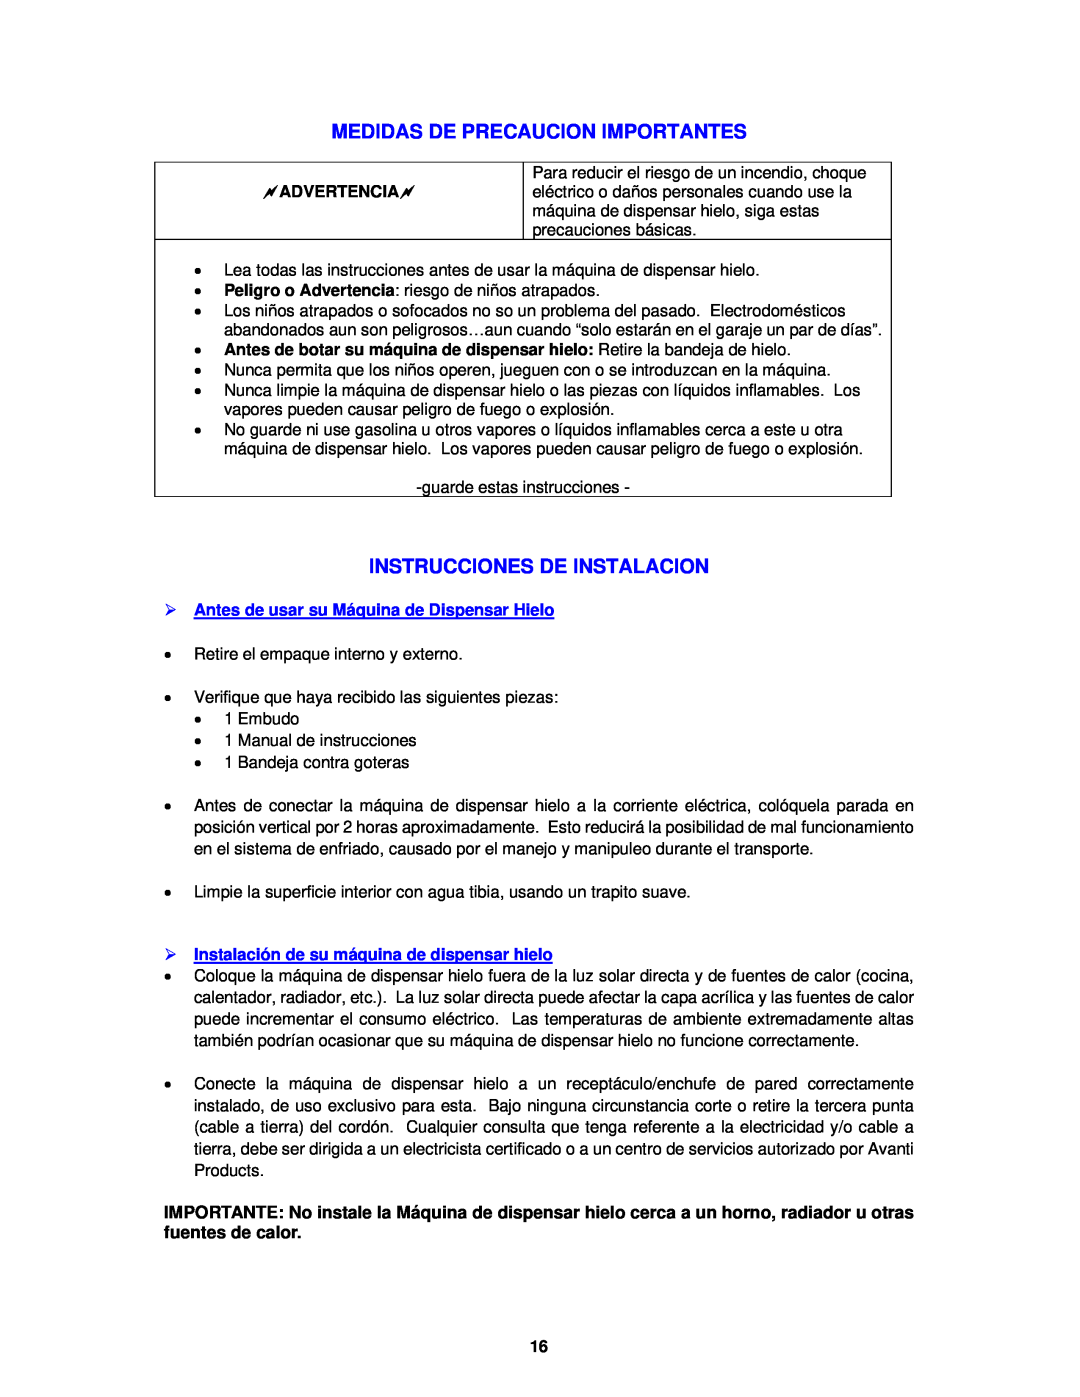 Avanti IMD250 instruction manual Medidas De Precaucion Importantes, Instrucciones De Instalacion, Advertencia 